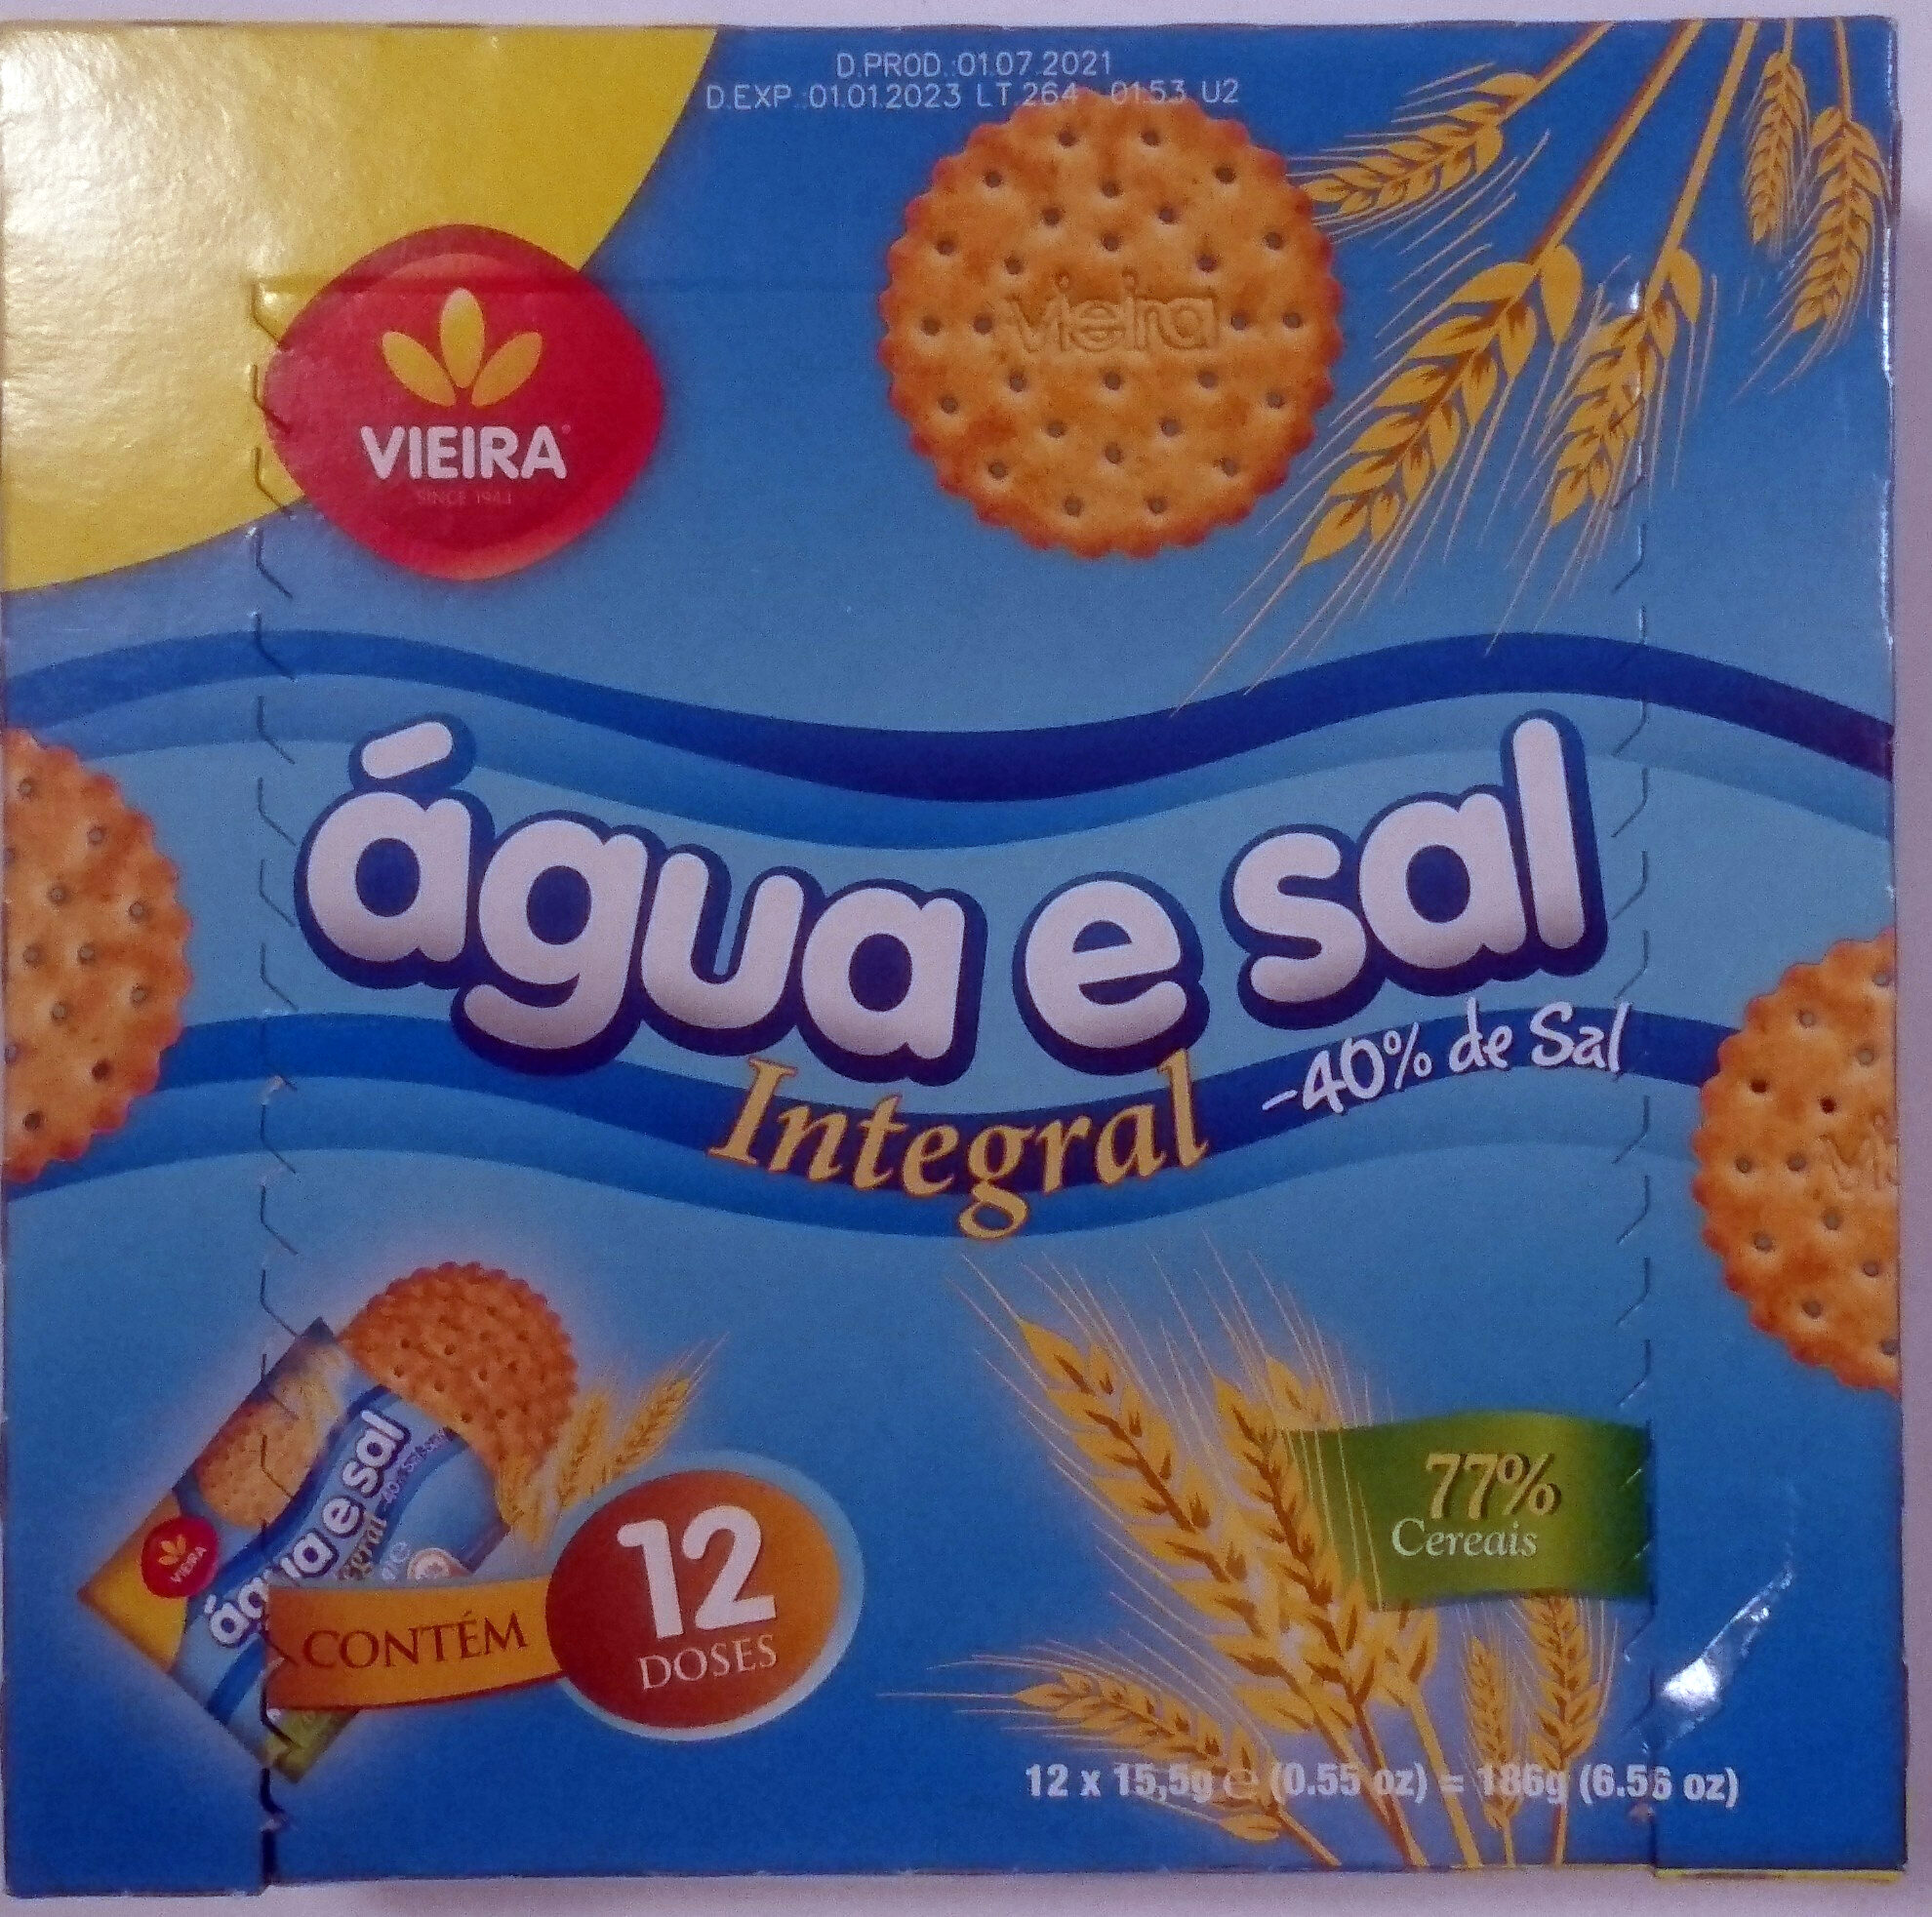 Bolacha água e sal integral -40% sal - Product - pt